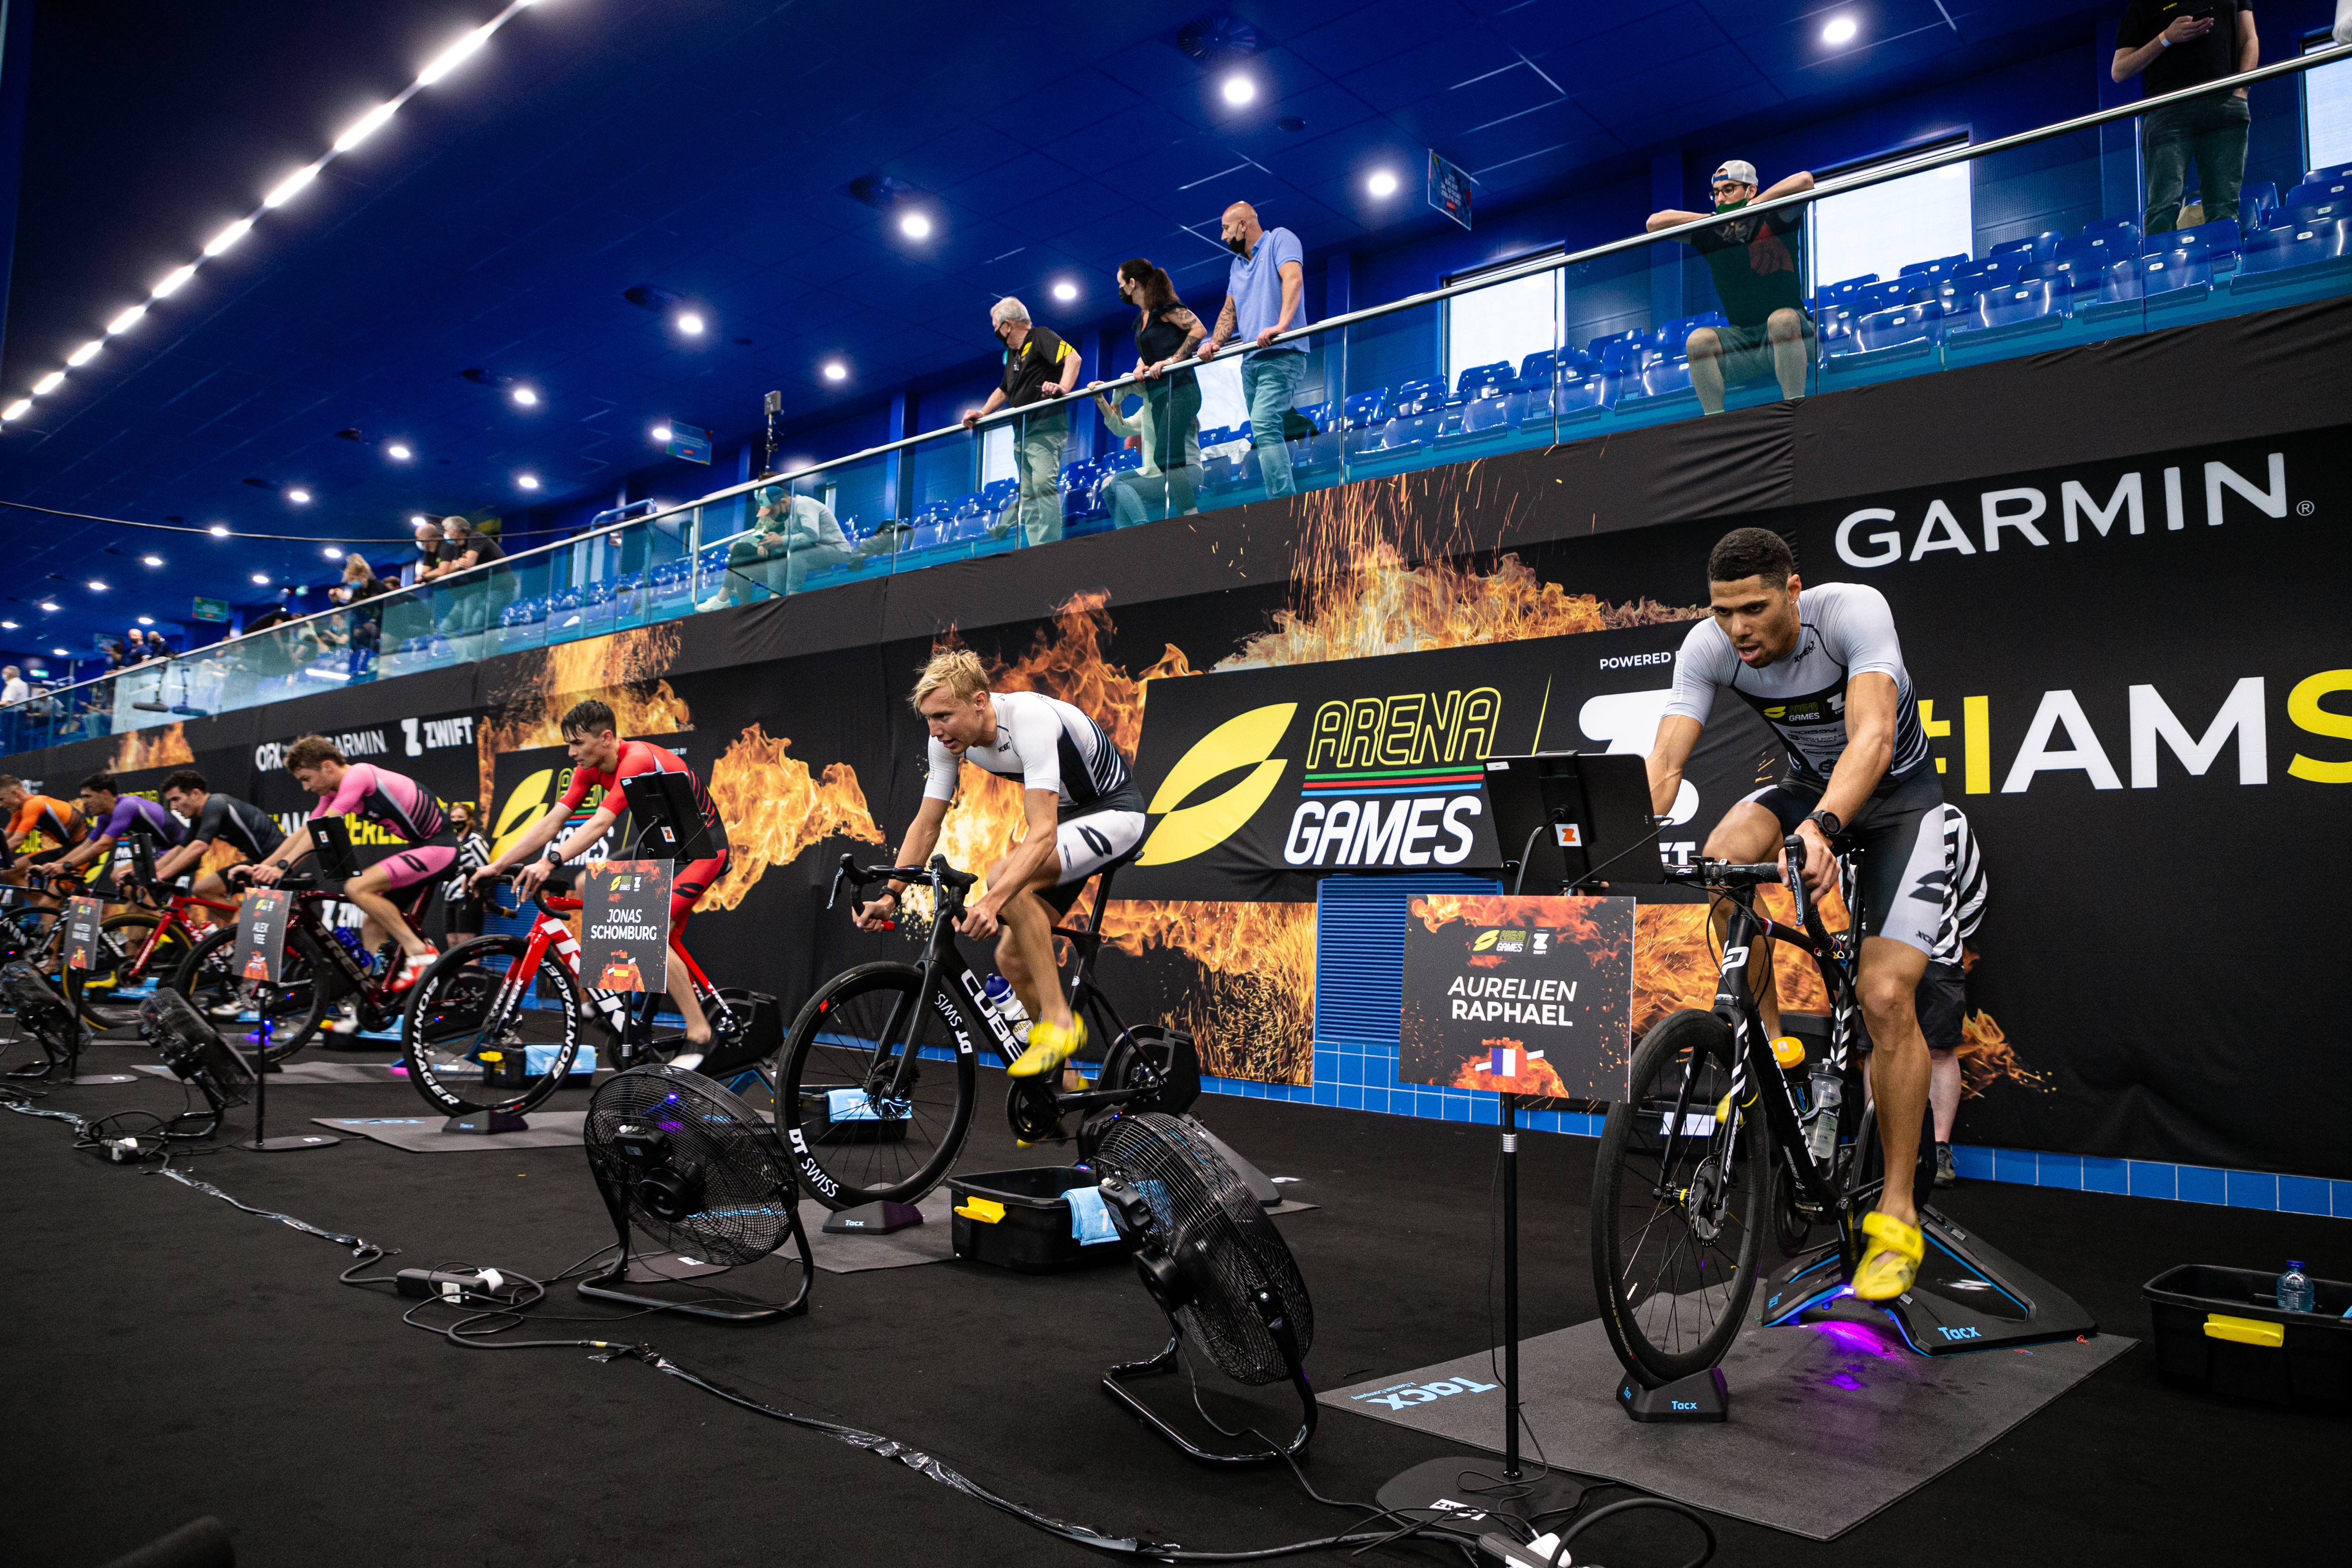 Elite men racing at Arena Games Rotterdam 2020 / Super League Triathlon